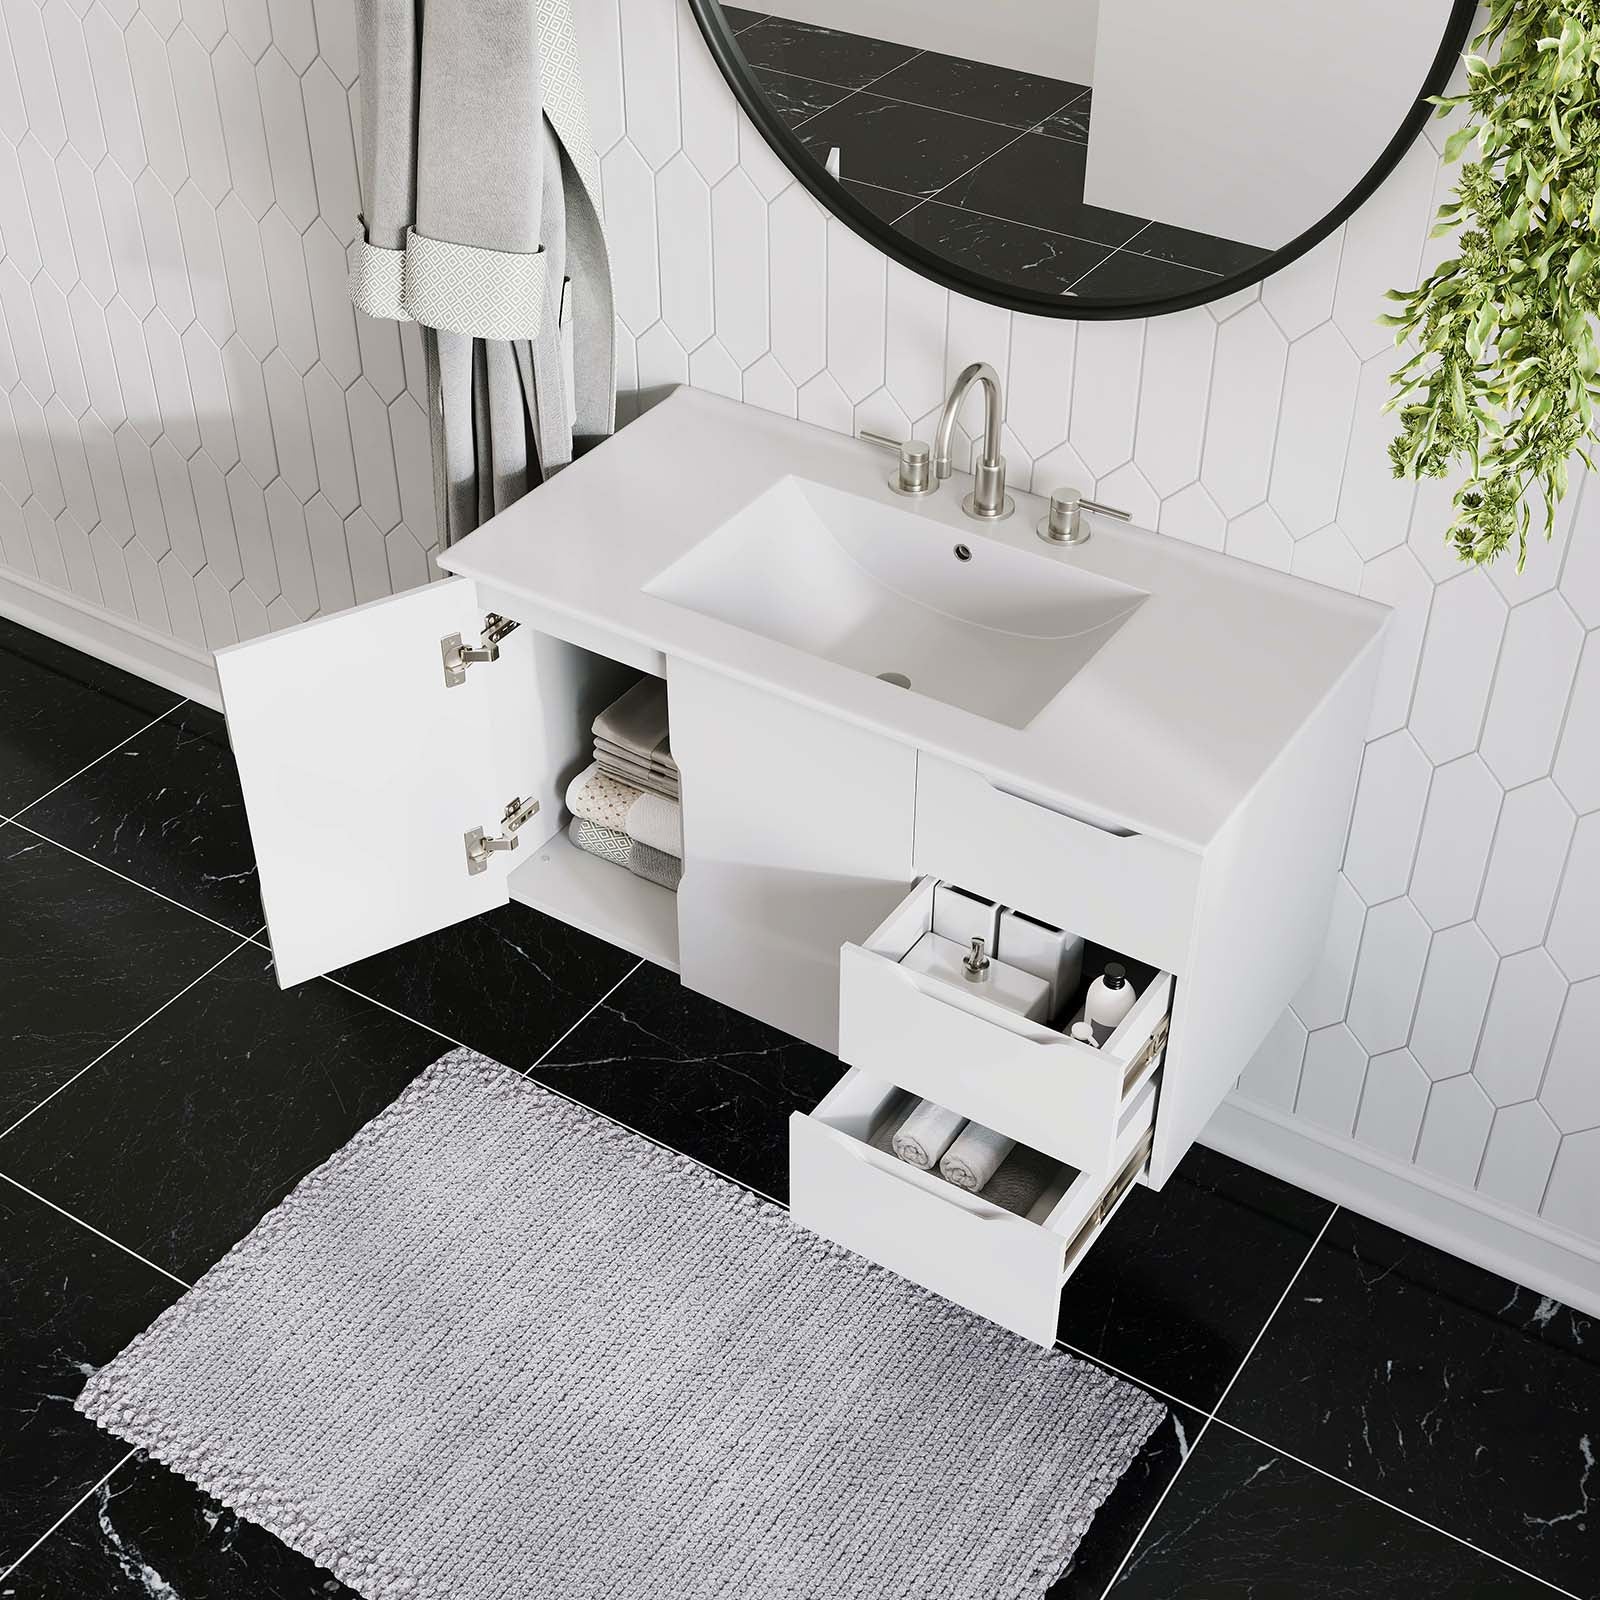 Modway Bathroom Vanity - Vitality 36" Bathroom Vanity White White